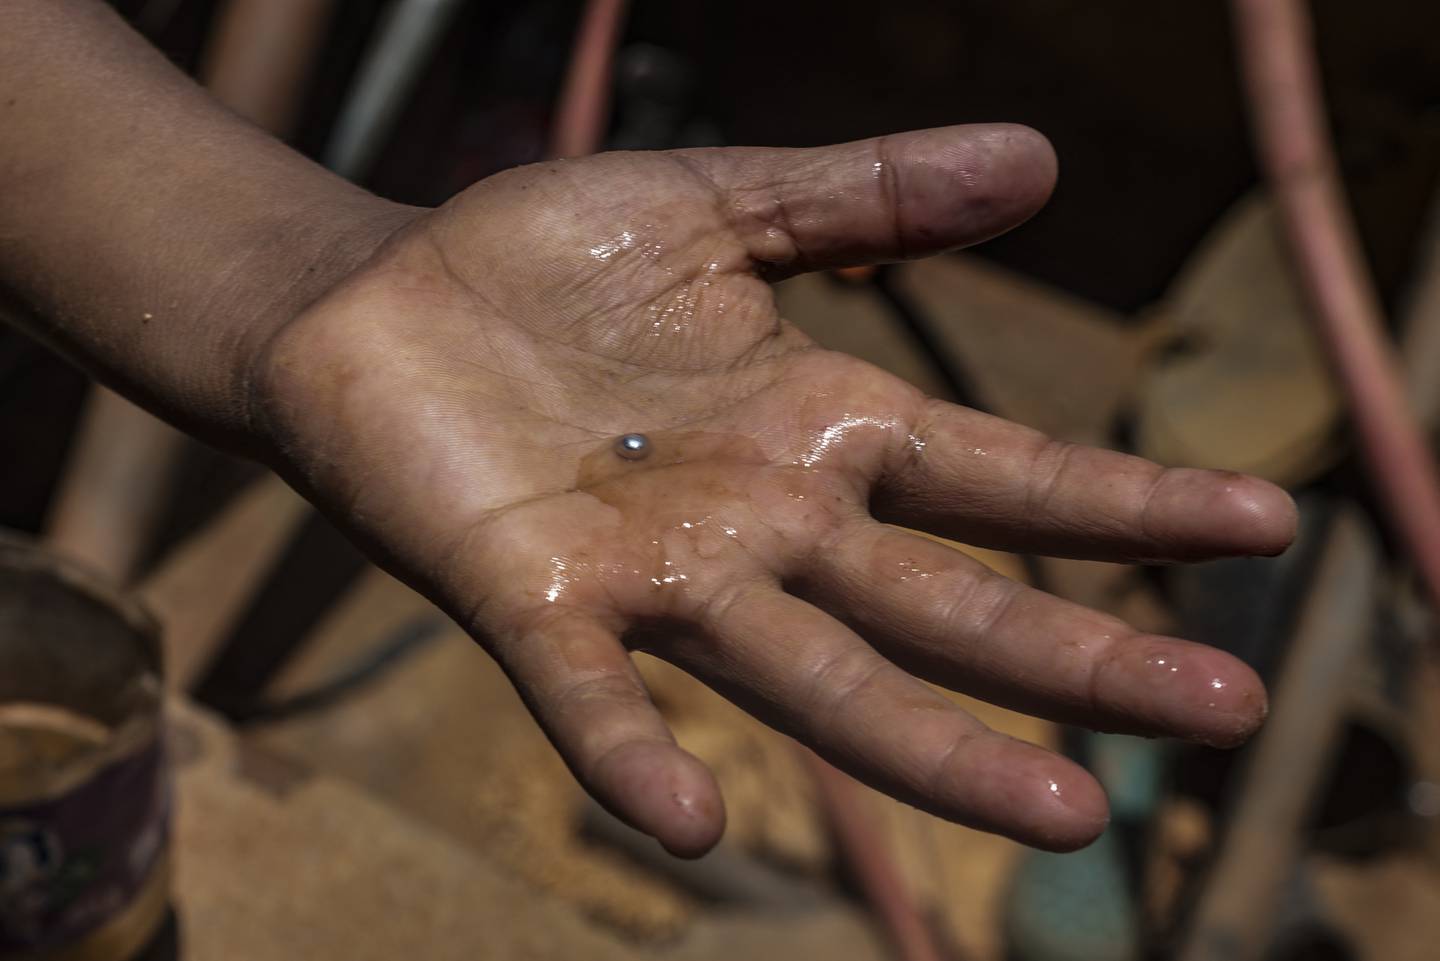 Un niño minero venezolano muestra una bola de mercurio que se utiliza diariamente para separar el oro que se encuentra entre charcos de lodo en una mina a cielo abierto para luego ser procesado manualmente en un molino en El Callao